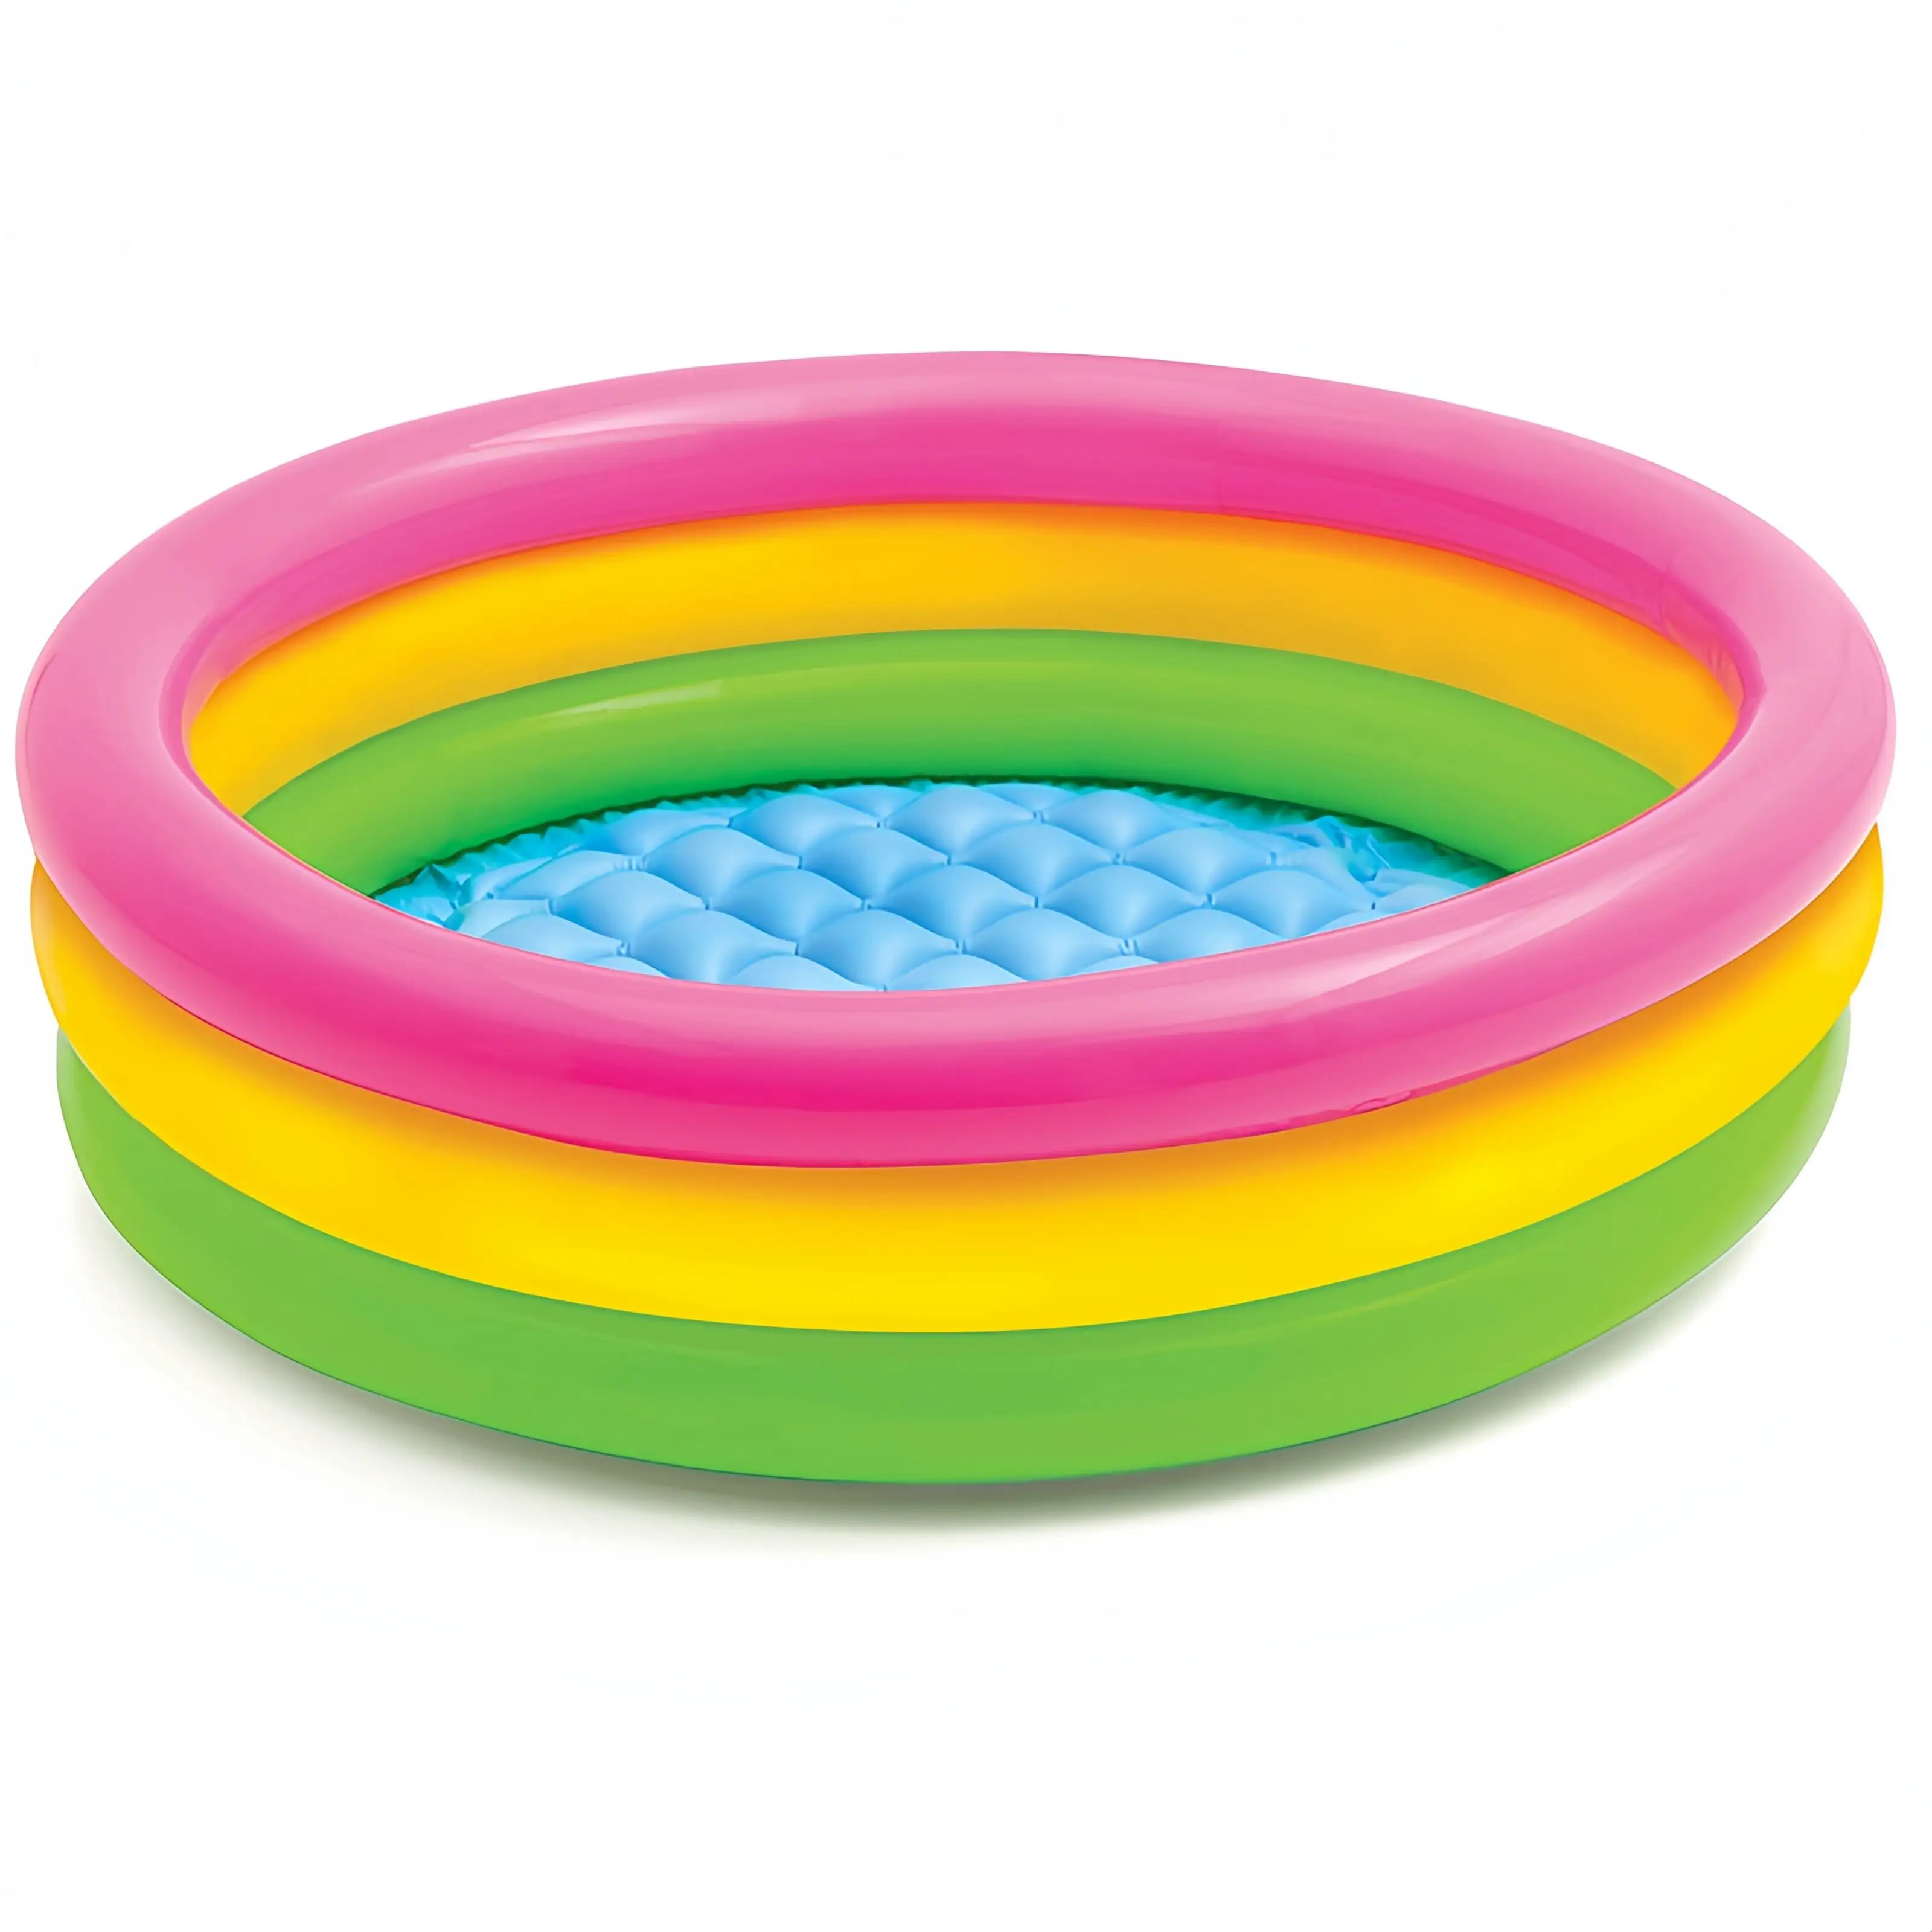 Nuova piscina gonfiabile addensata per bambini piccola piscina gonfiabile a 3 anelli per bambini gioco d'acqua all'aperto al coperto